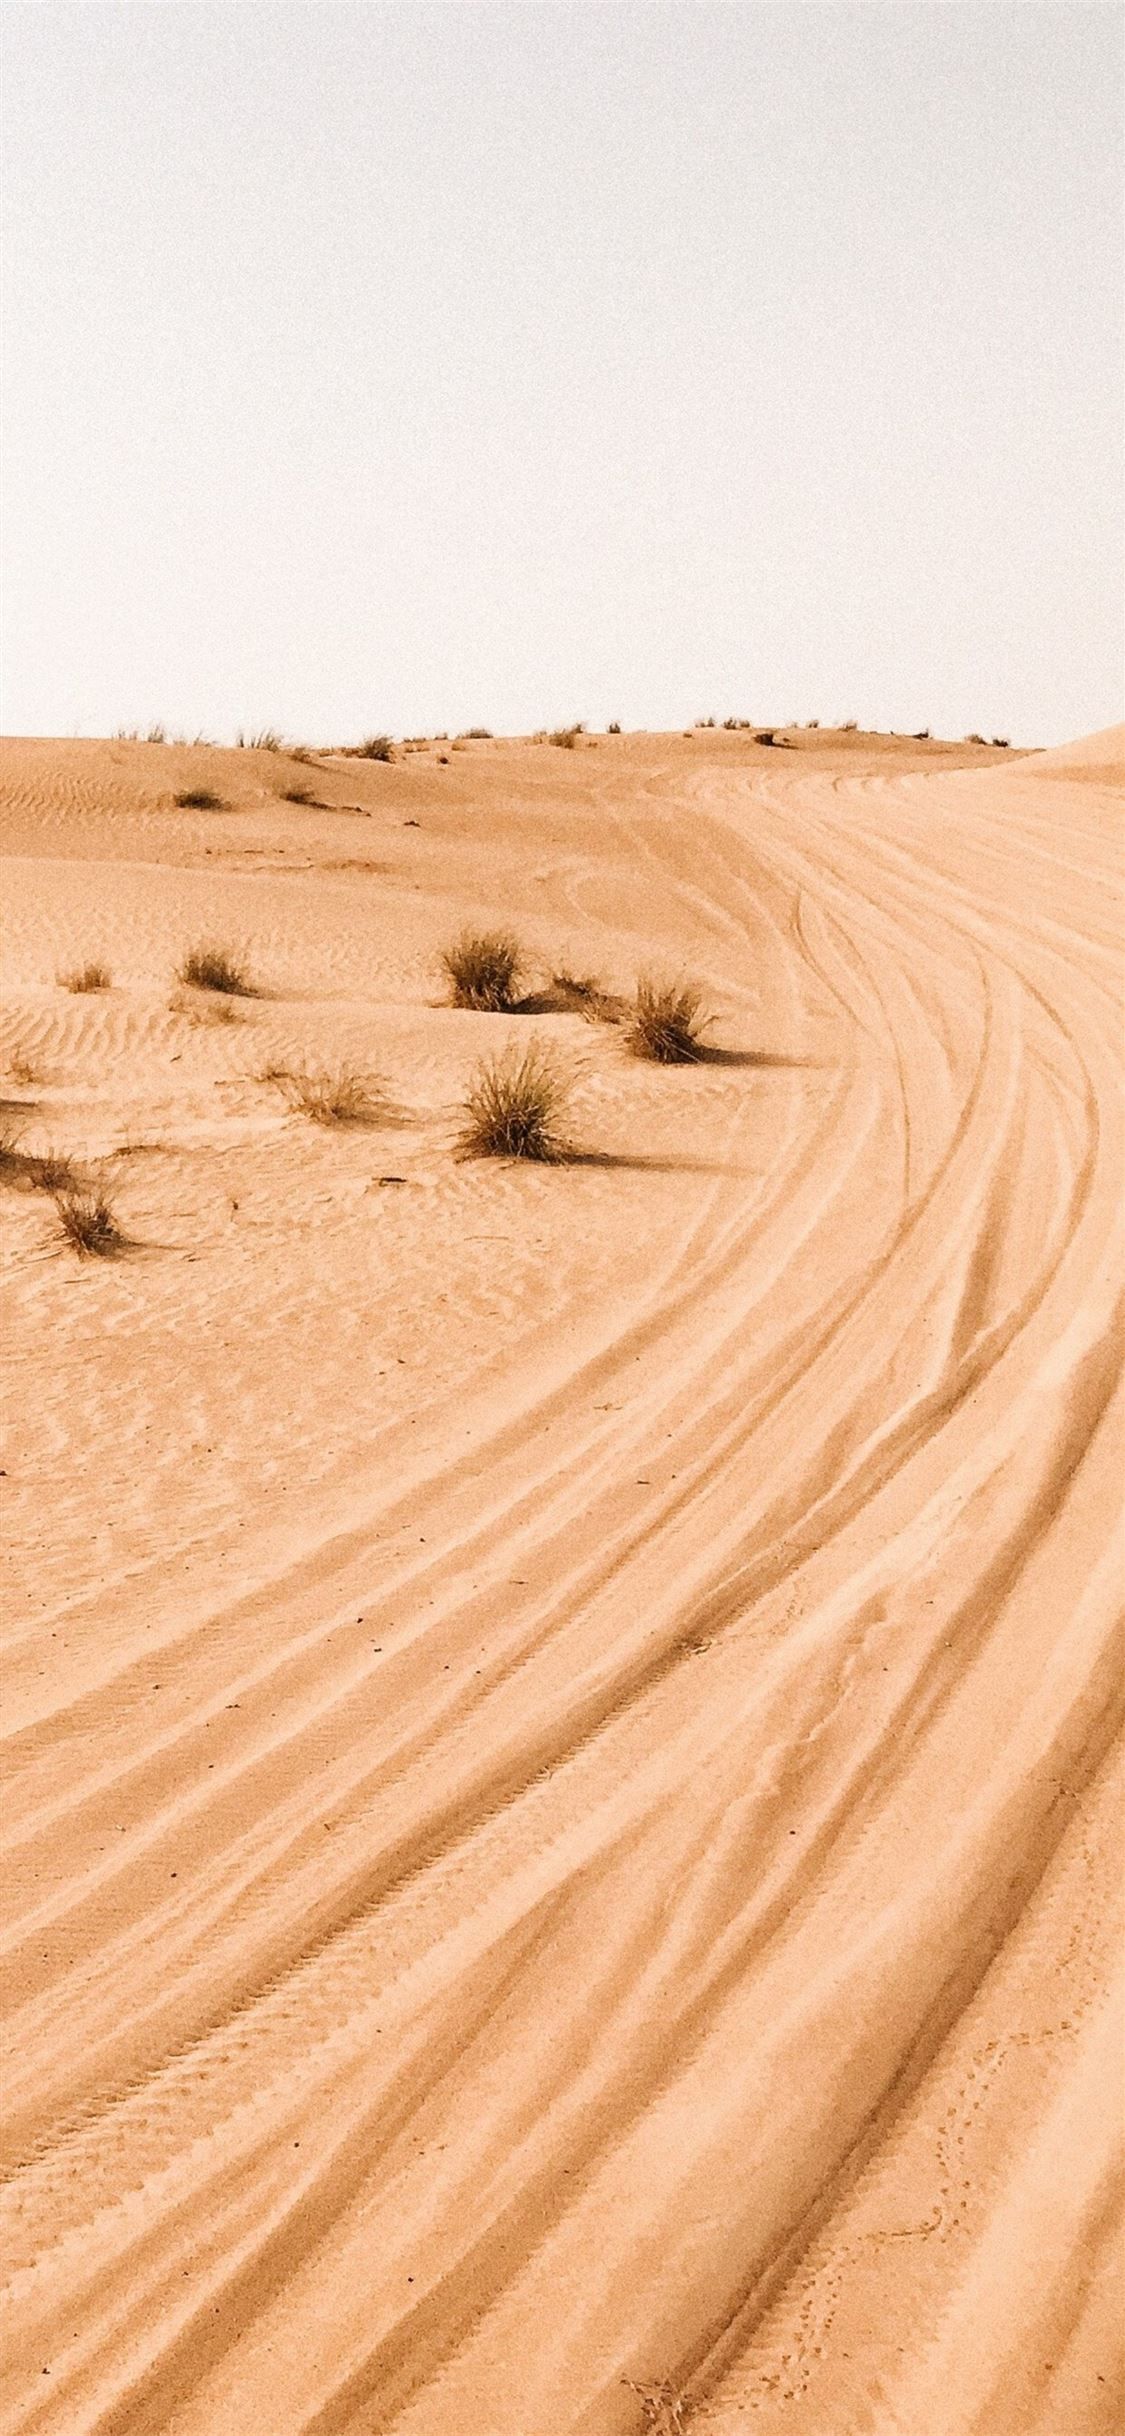 desert photography 4k #desert #photography #nature k #iPhone11Wallpaper. Desert photography, Photography 4k, Scenery wallpaper